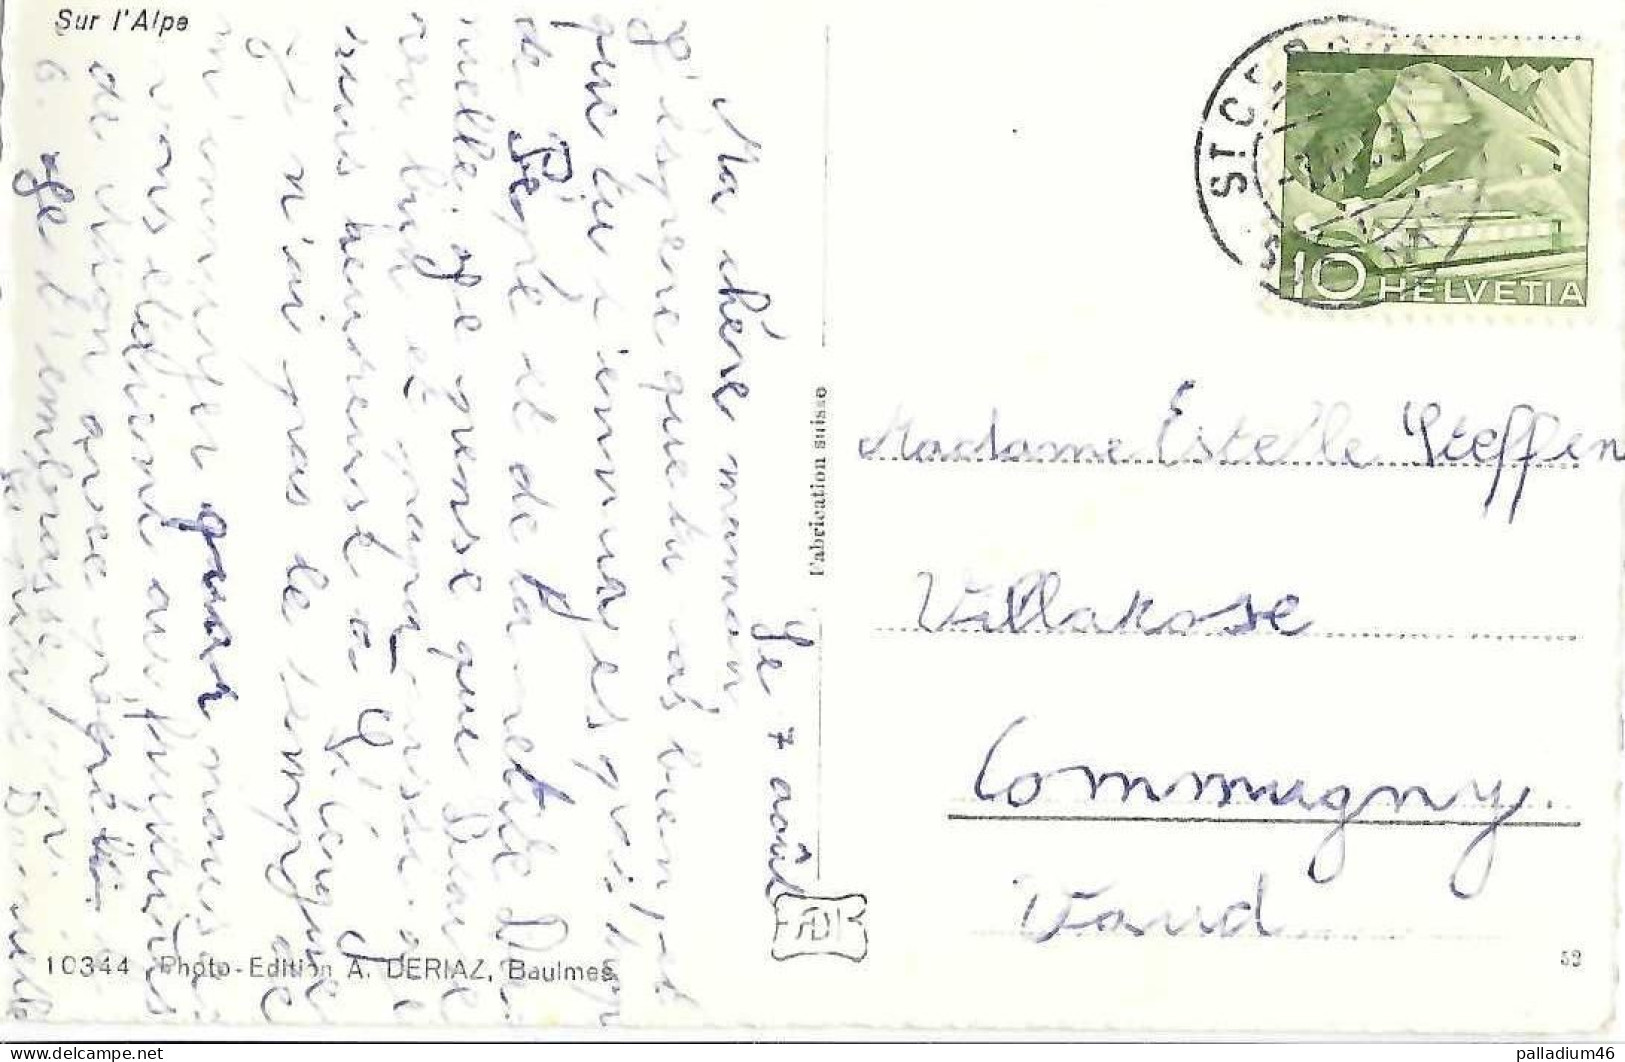 SUISSE FOLKLORE SUR L'ALPE - ARMAILLI AVEC VACHE - A.Deriaz Baulmes No 10344 - Circulé Le 04.08.1953 - Riaz